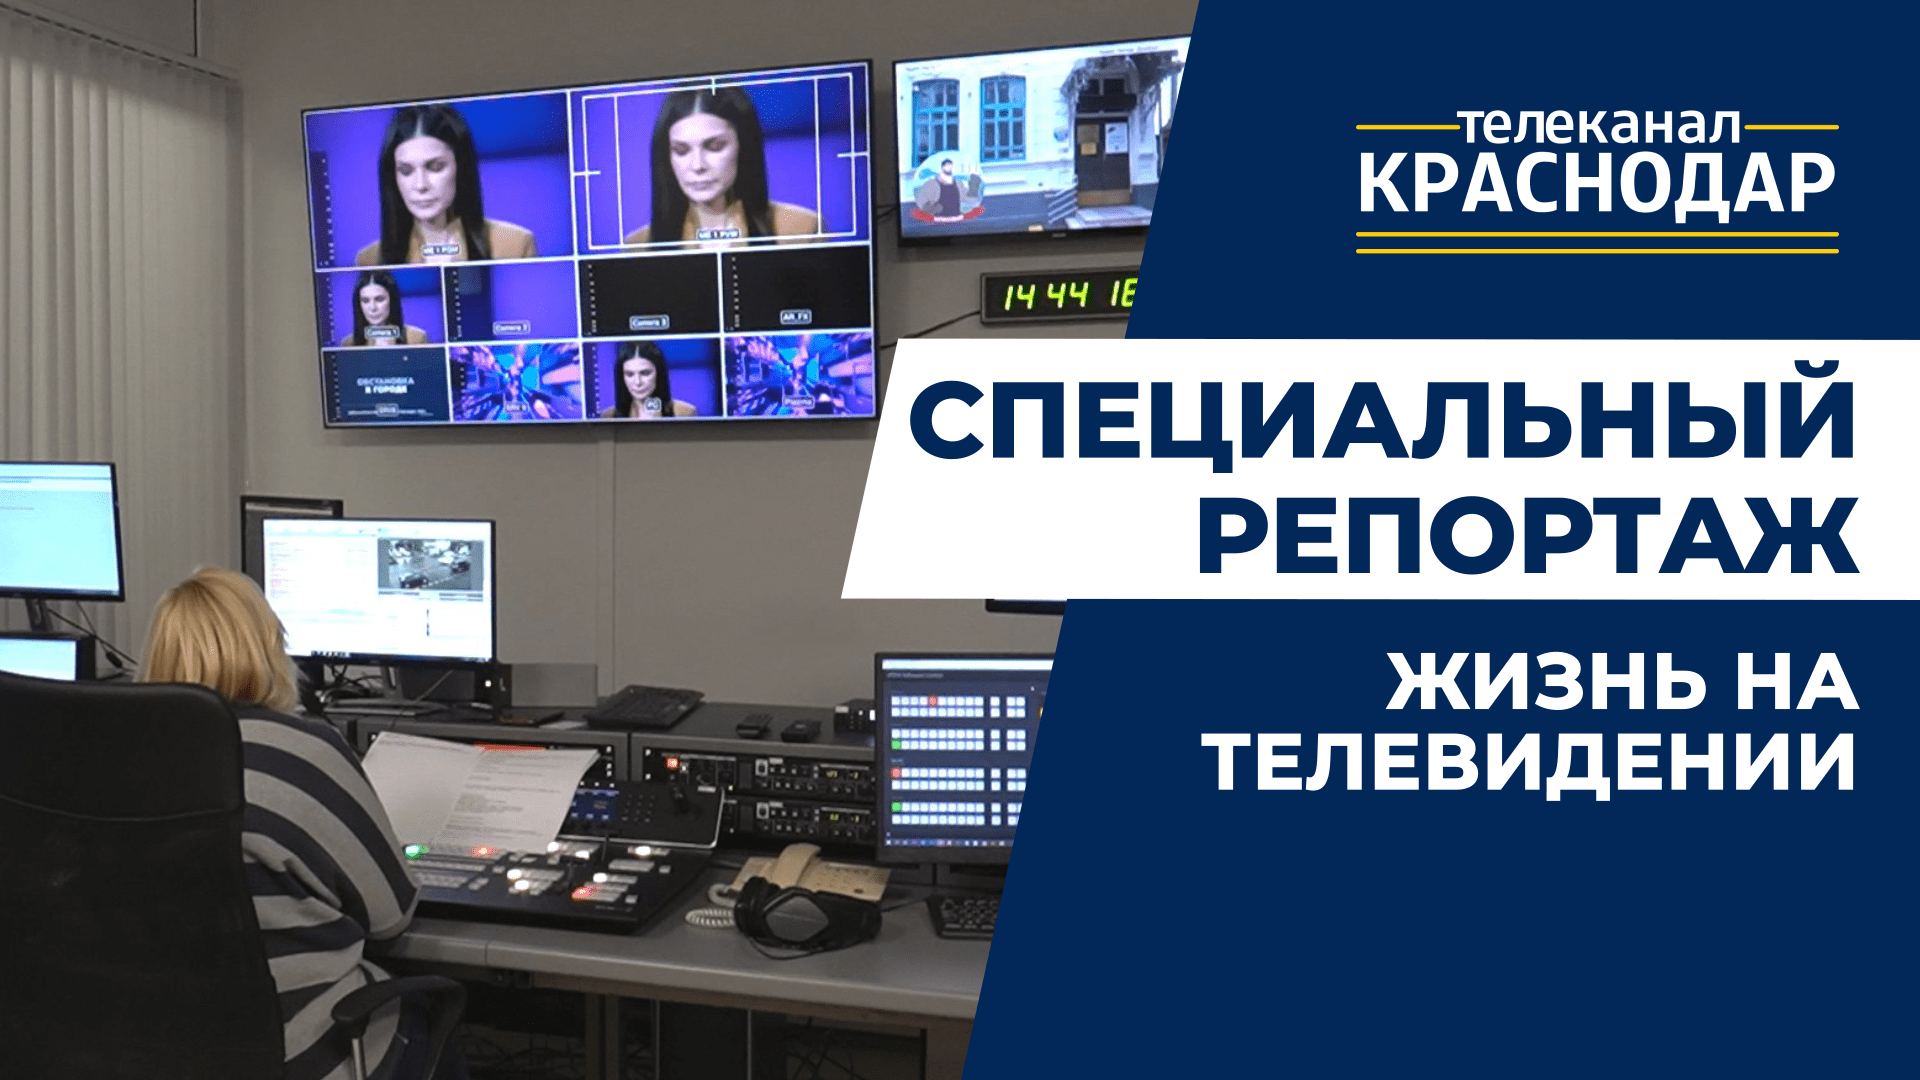 Телеканал «Краснодар»: сотрудники о профессии журналиста, работе телевизионщика. Современные новости